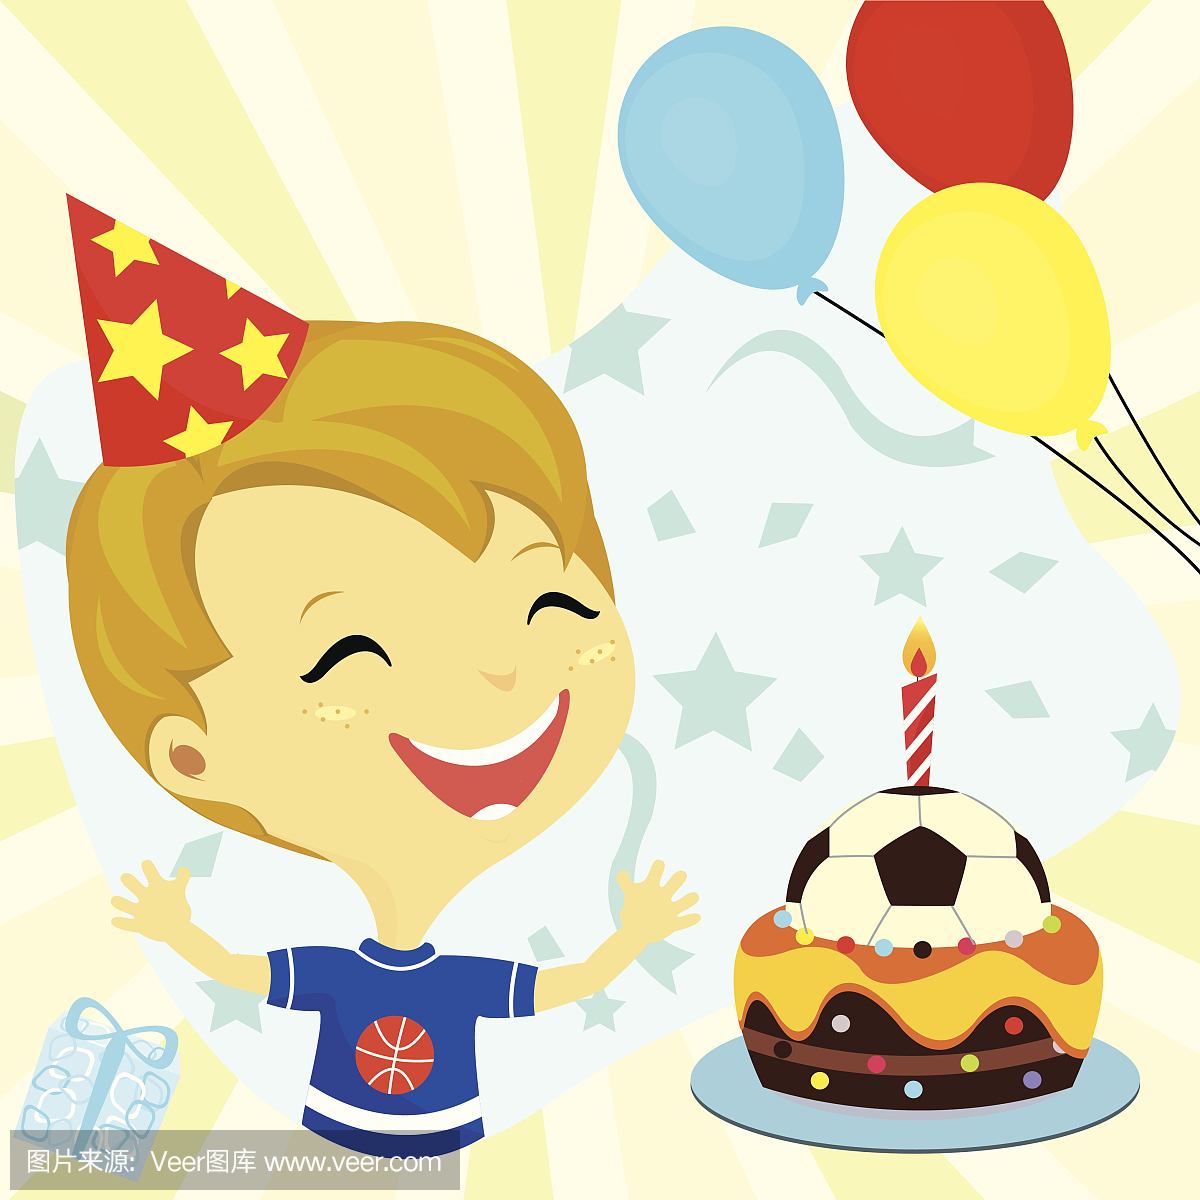 生日快乐派对男孩,蛋糕,气球